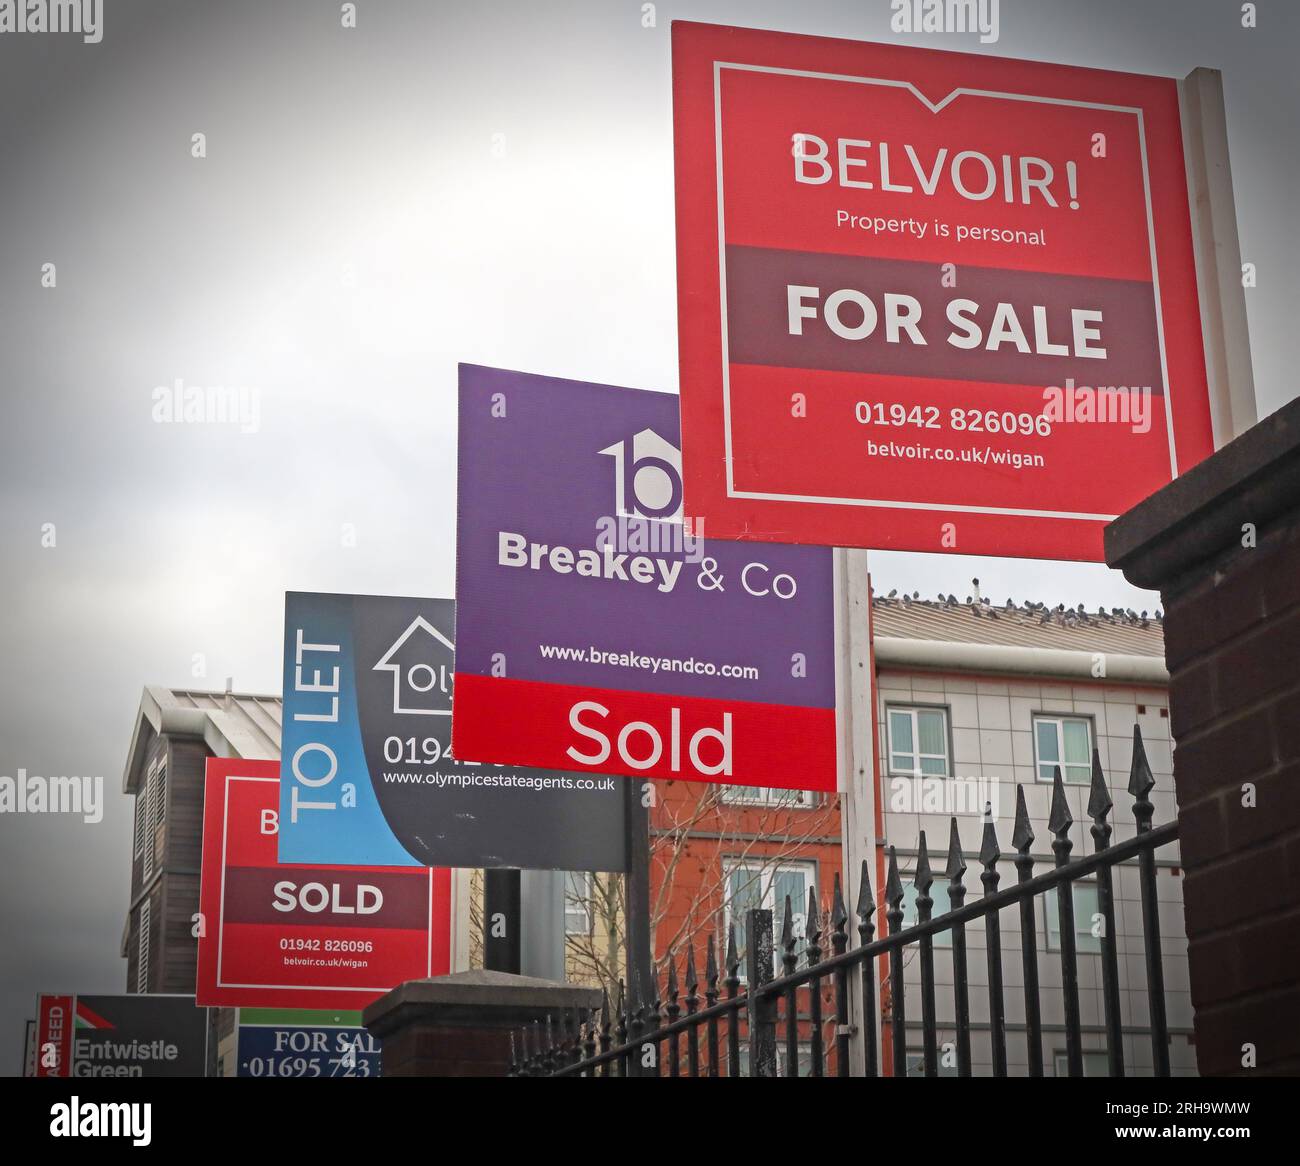 Belvoir, Breakey & Co, à vendre, pour louer des enseignes, des appartements dans un marché immobilier inabordable, Wigan, Greater Manchester, Lancs, Angleterre, ROYAUME-UNI, WN1 Banque D'Images